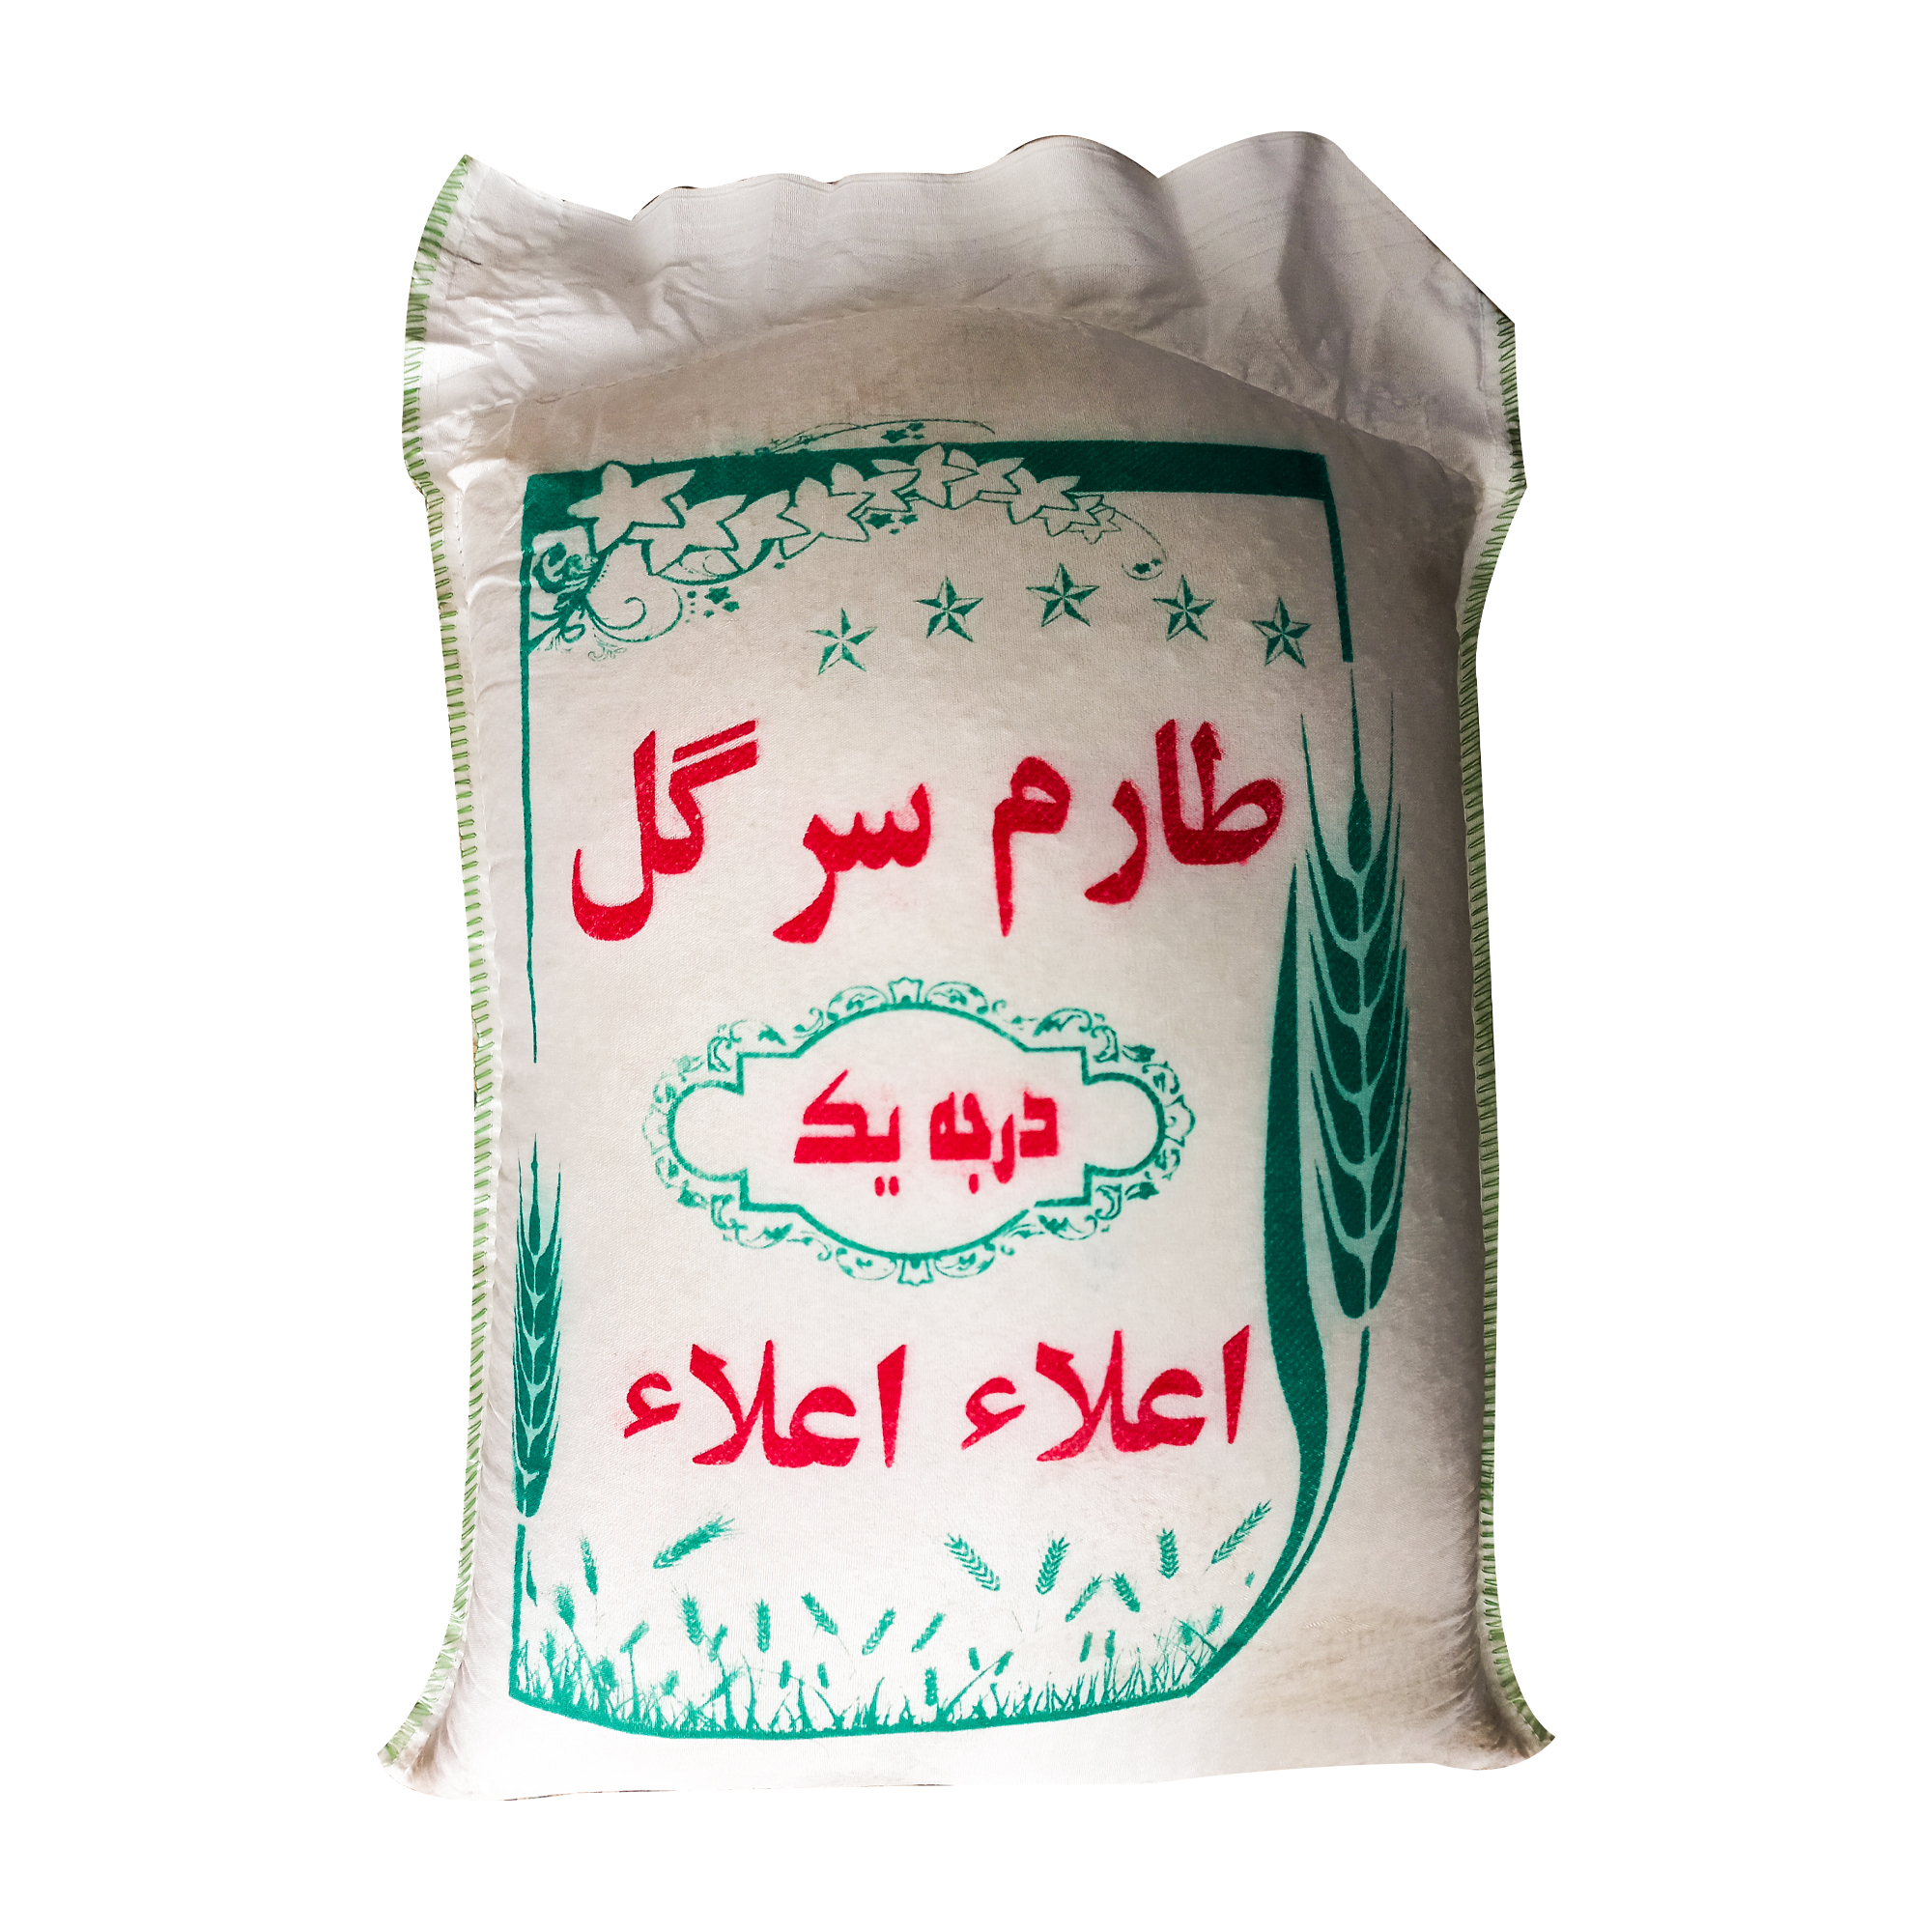 نکته خرید - قیمت روز برنج ایرانی طارم سرگل درجه یک اعلاء - 10 کیلوگرم خرید